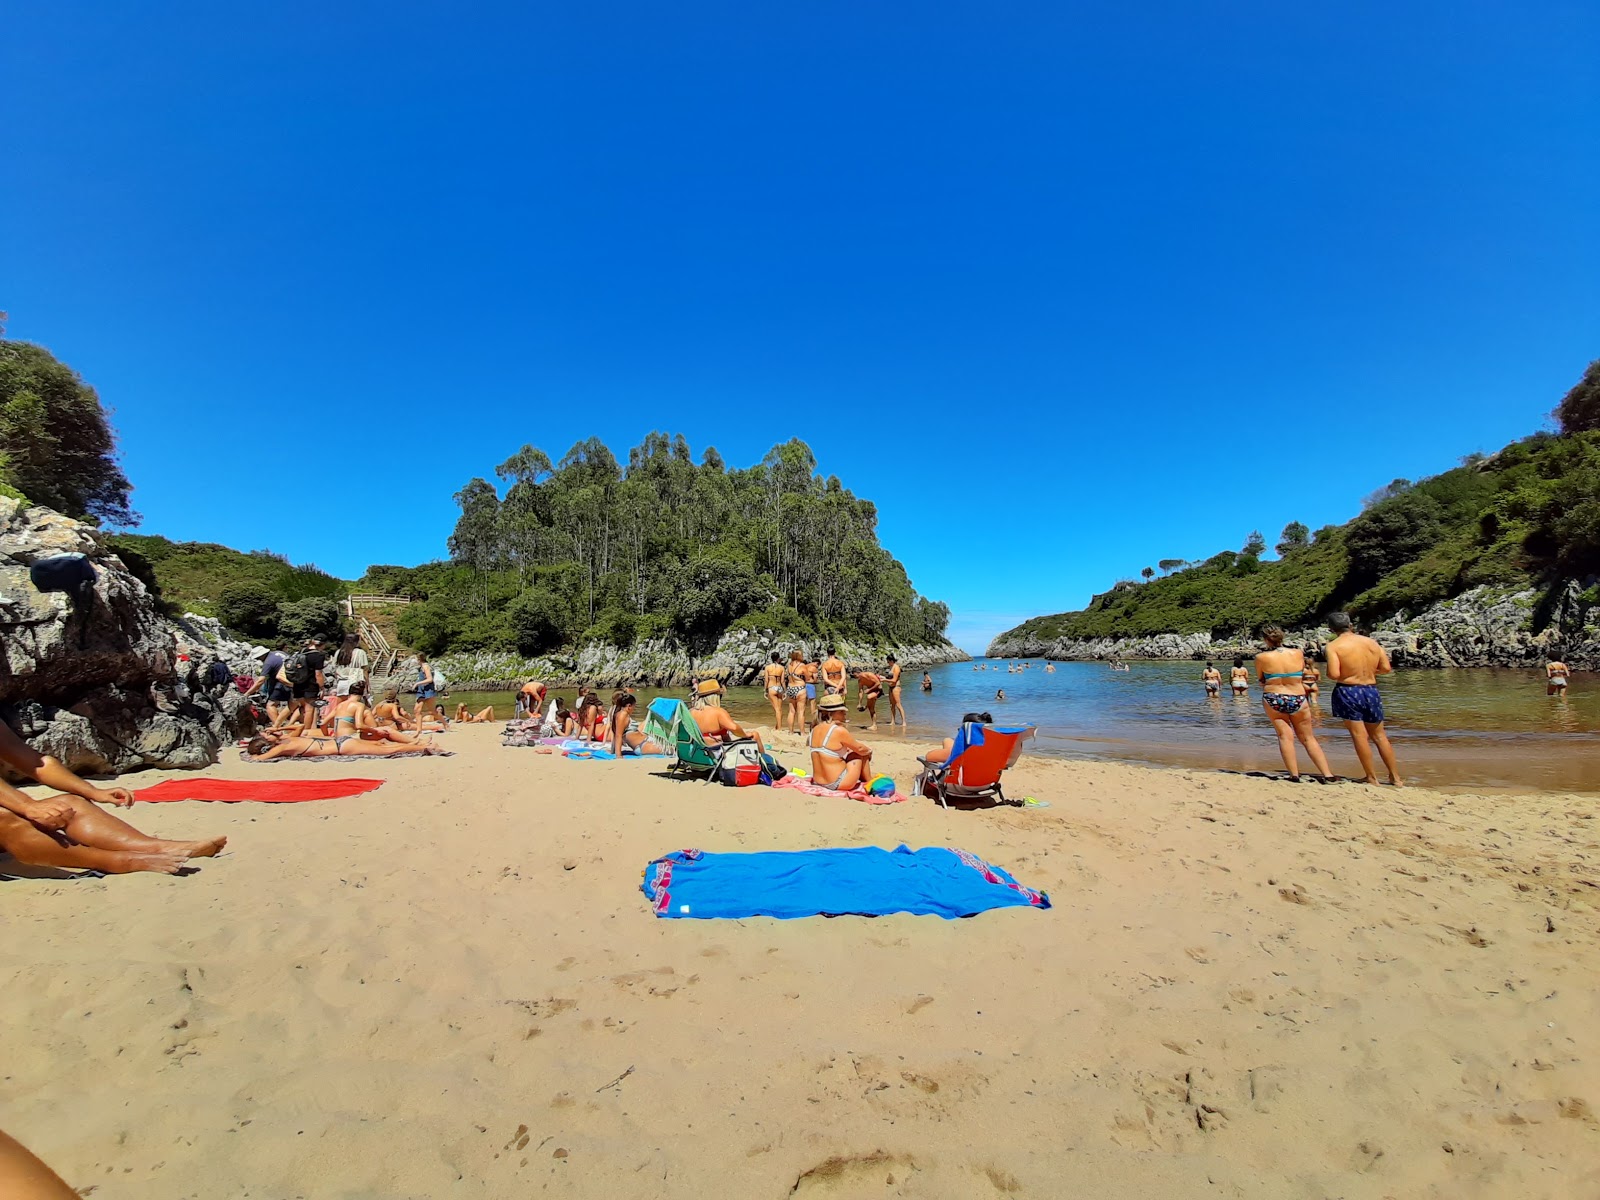 Playa de Guadamia'in fotoğrafı parlak kum yüzey ile